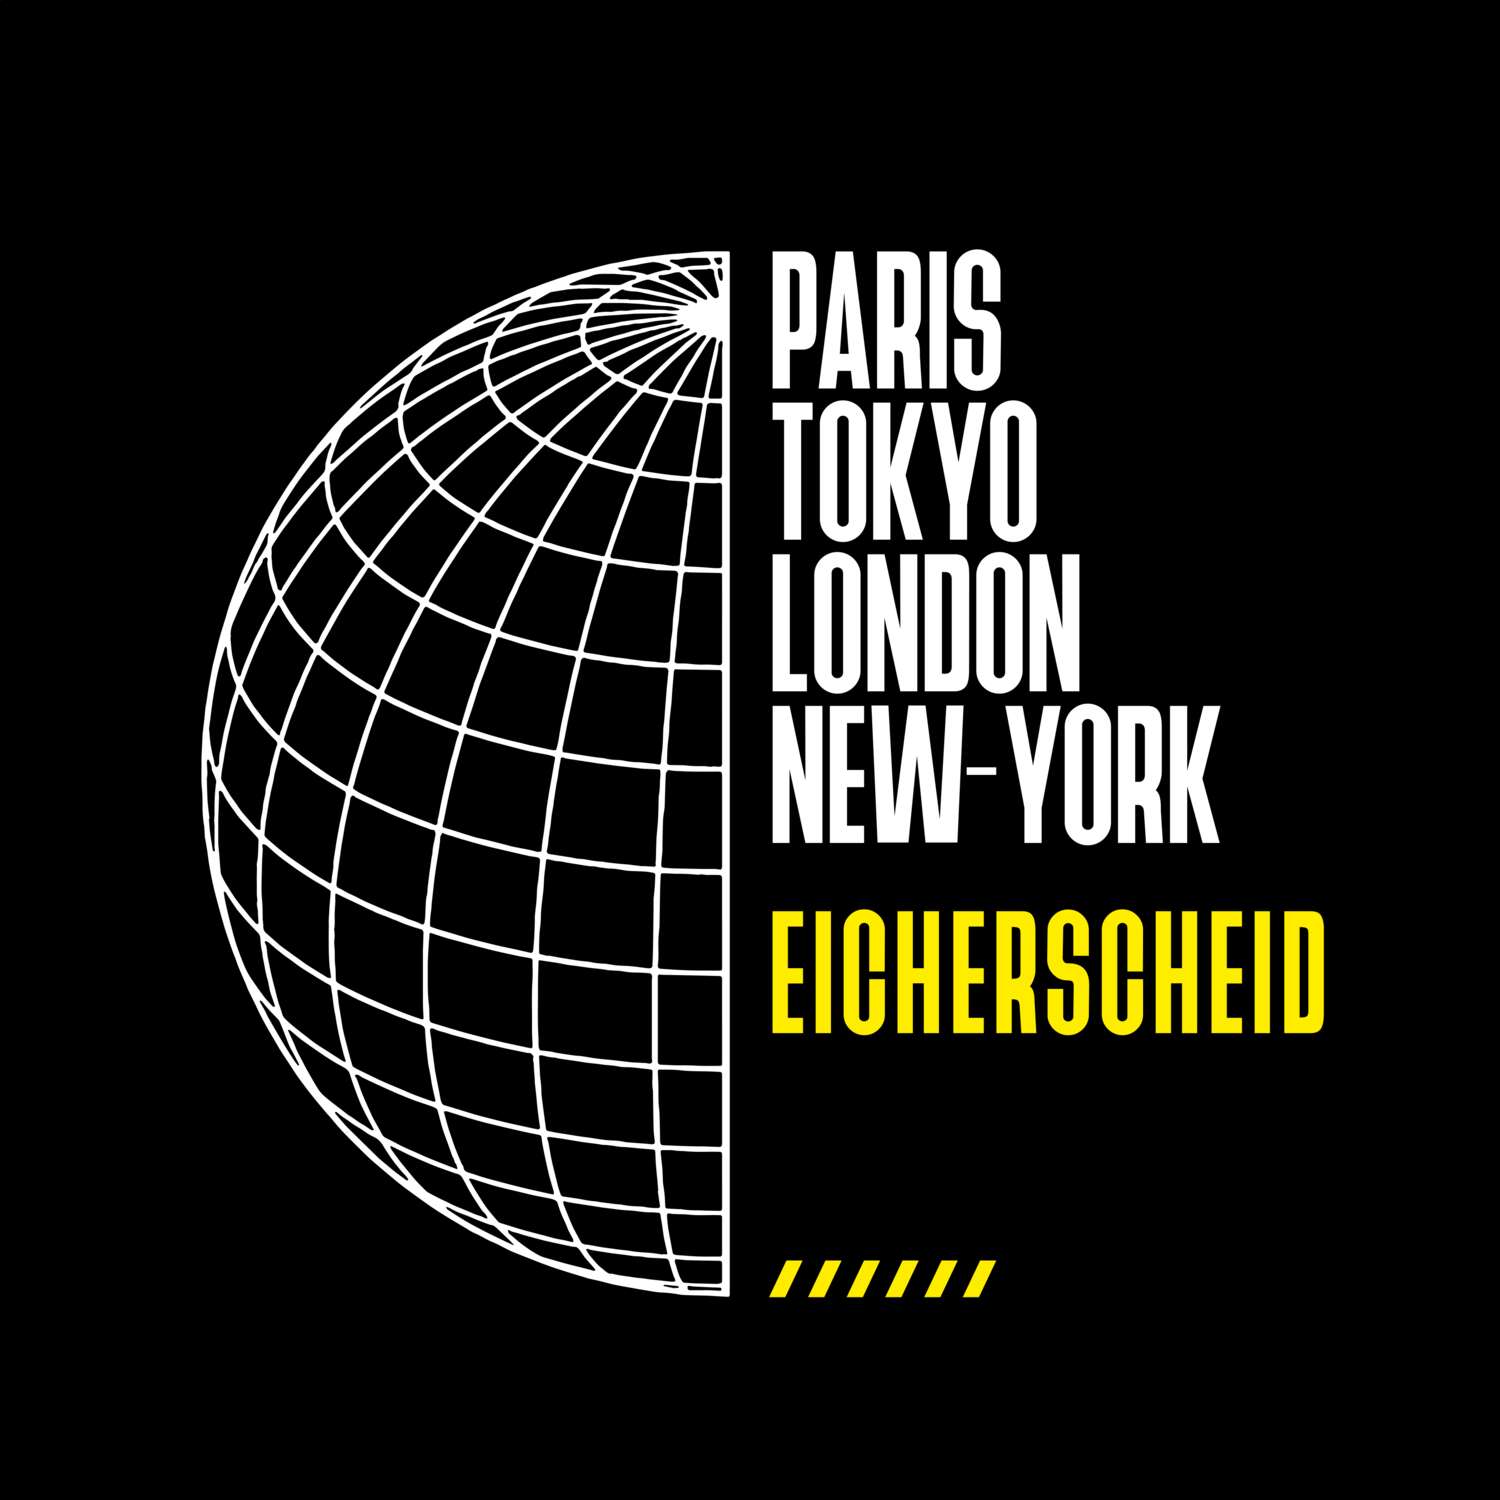 Eicherscheid T-Shirt »Paris Tokyo London«